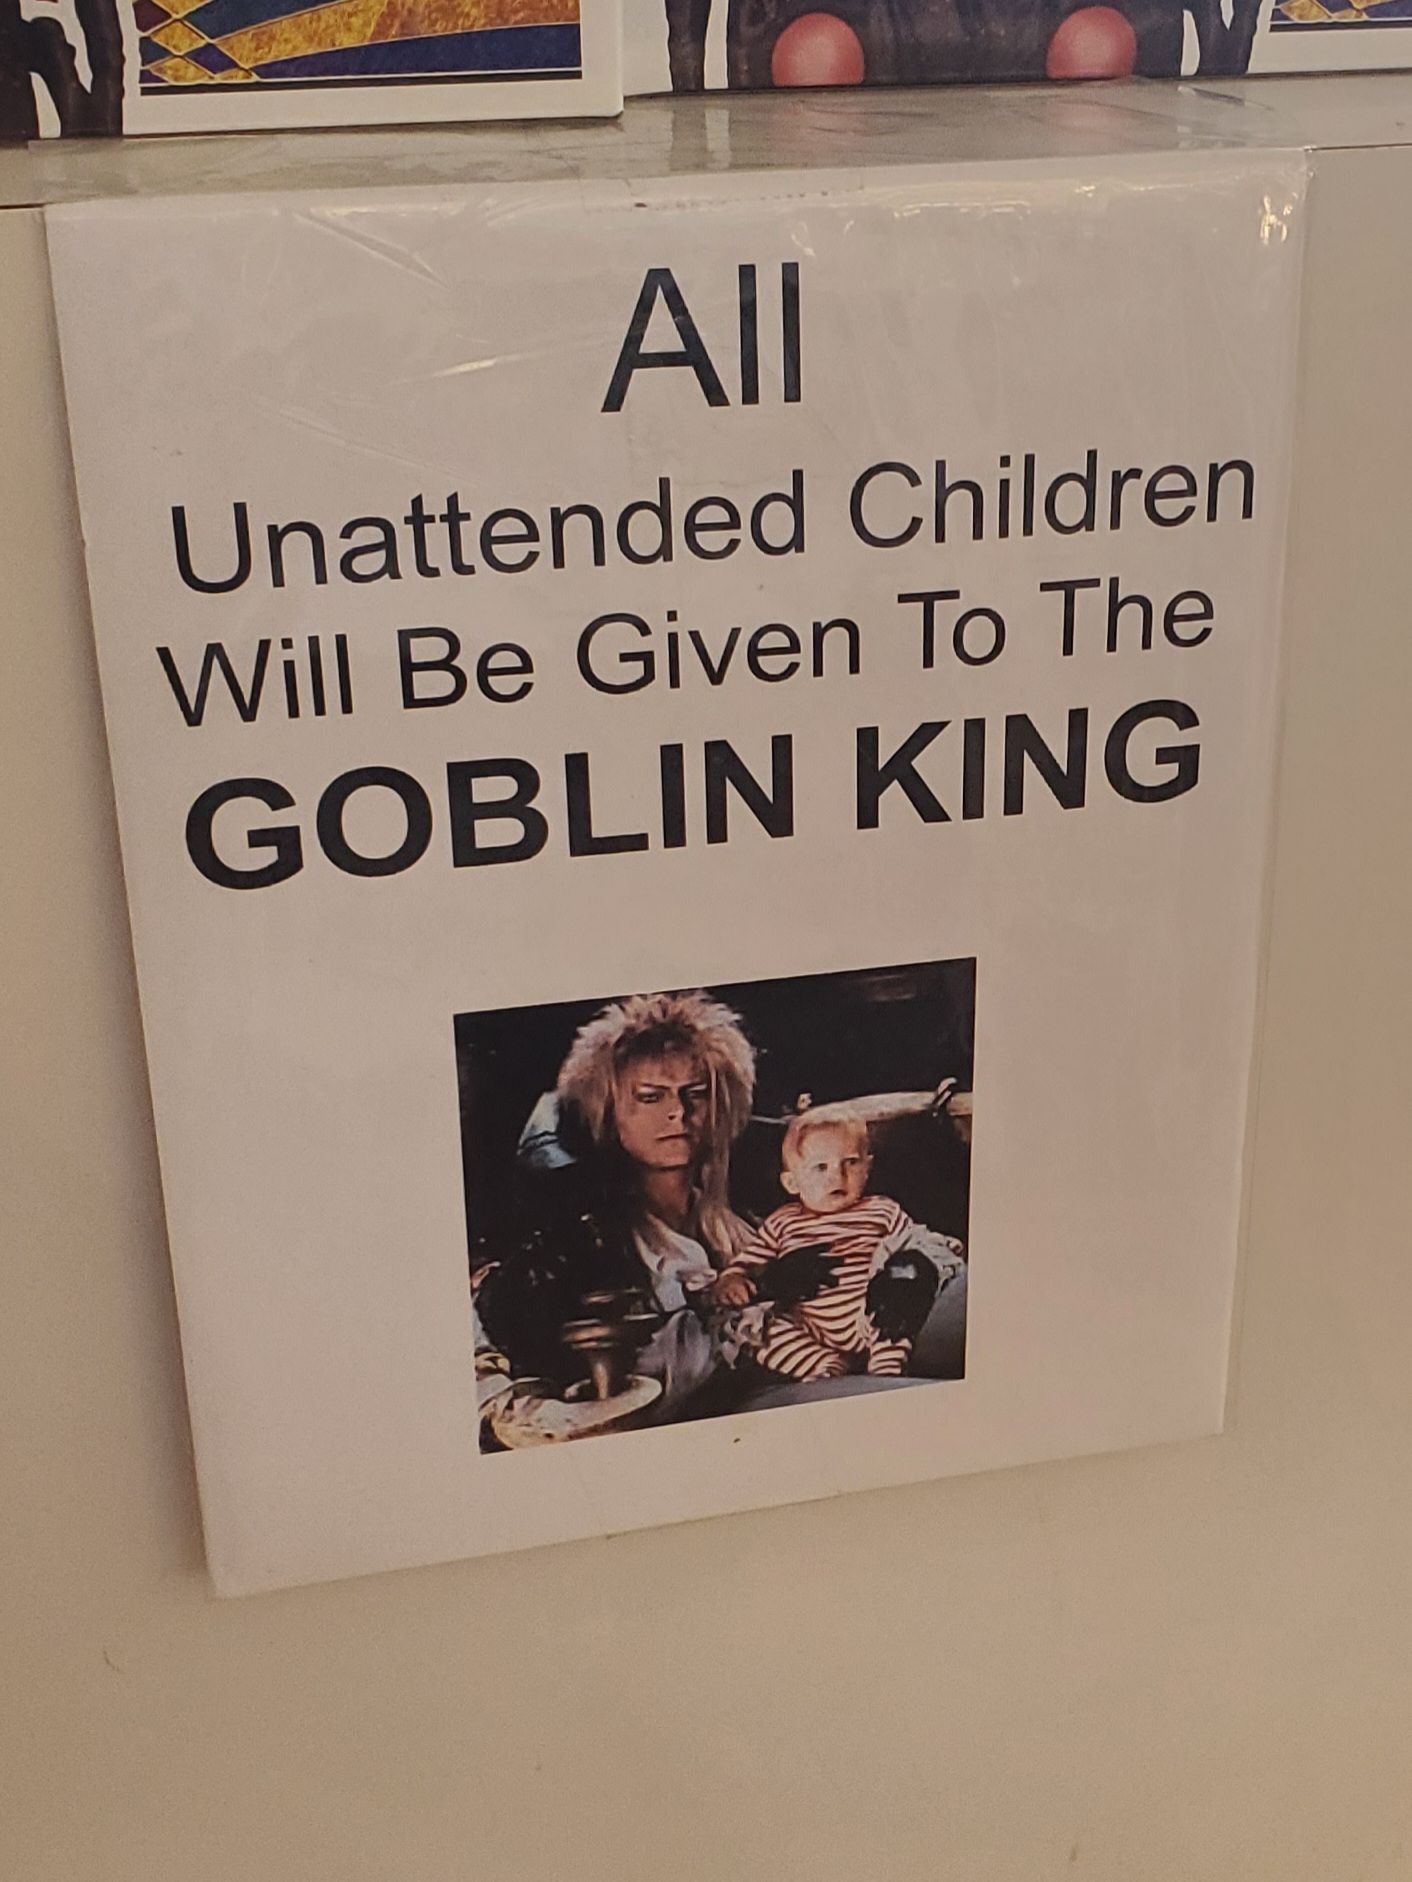 A sign at a local comic shop